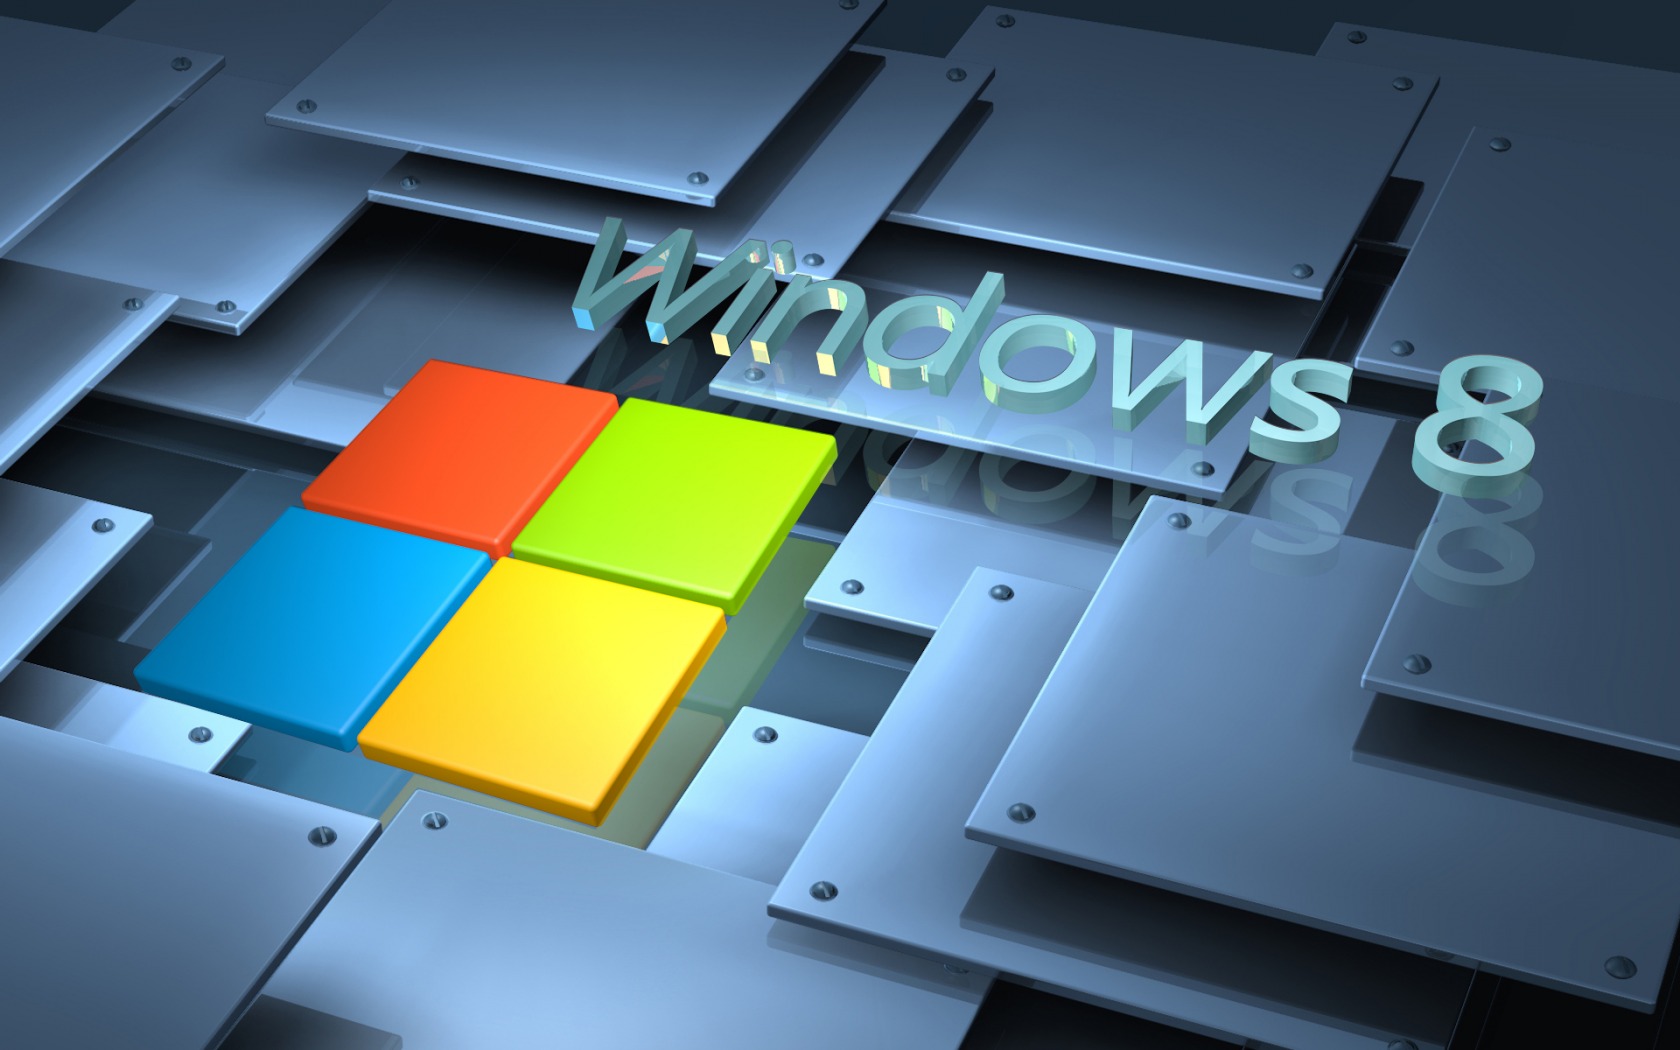 Windows 8 3D Wallpapers HD Wallpaper of Windows   hdwallpaper2013com 1680x1050